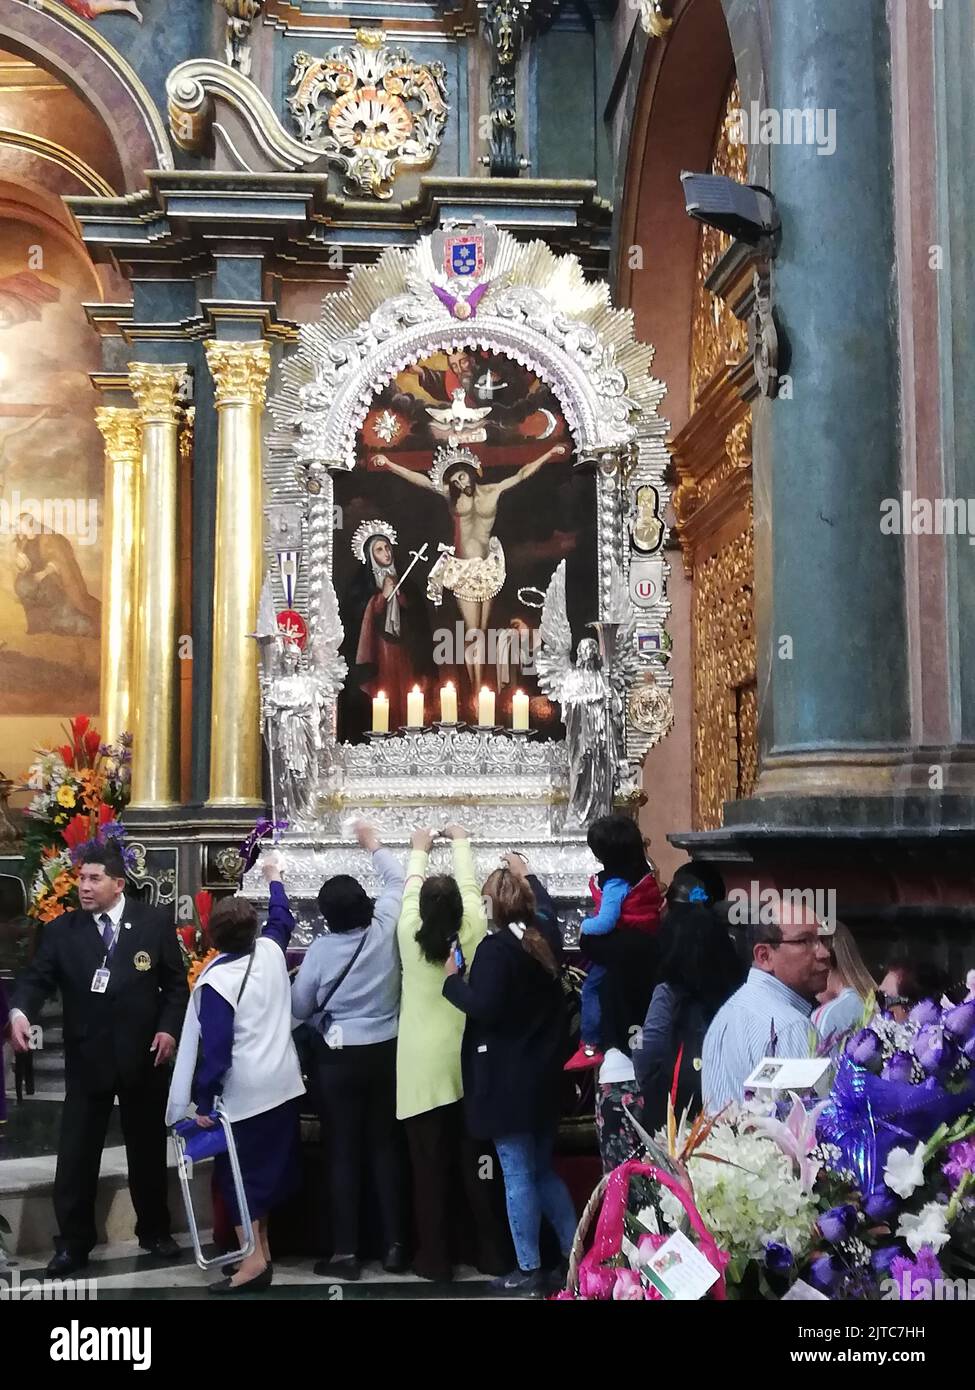 Persone che cercano di avvicinarsi all'immagine processionale del Signore dei Miracoli portando offerte e chiedendo la sua benedizione e il suo aiuto. Foto Stock